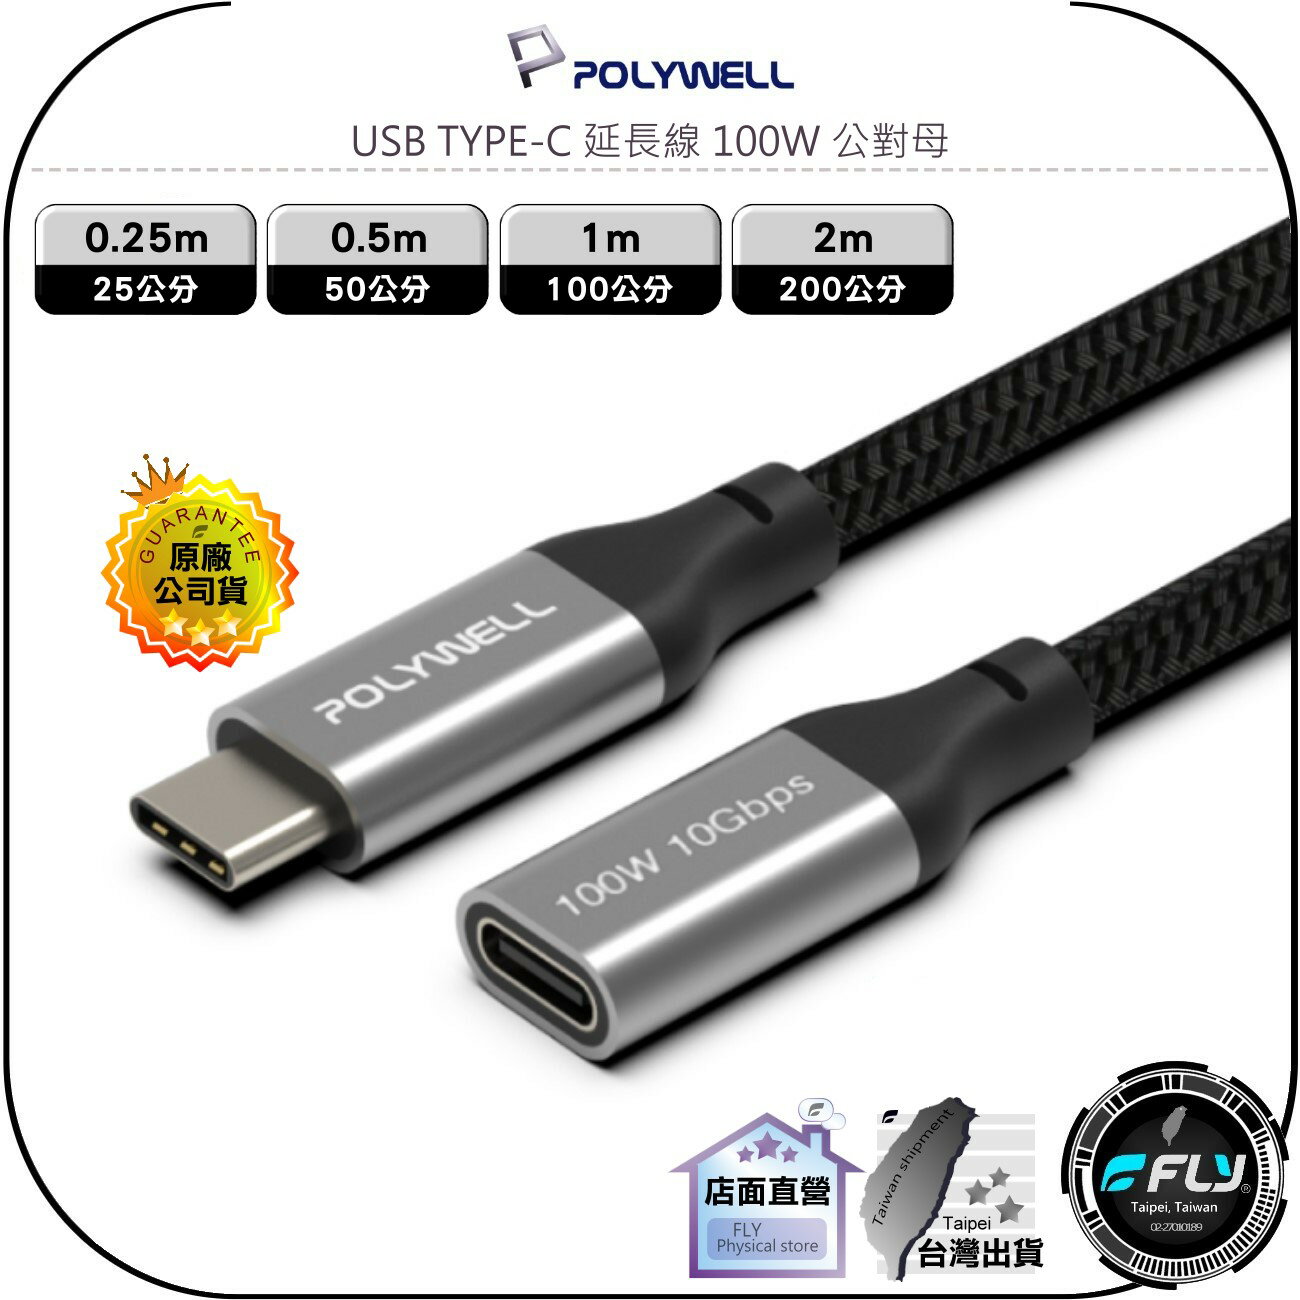 【飛翔商城】POLYWELL 寶利威爾 USB TYPE-C 延長線 100W 公對母◉0.25m/0.5m/1m/2m